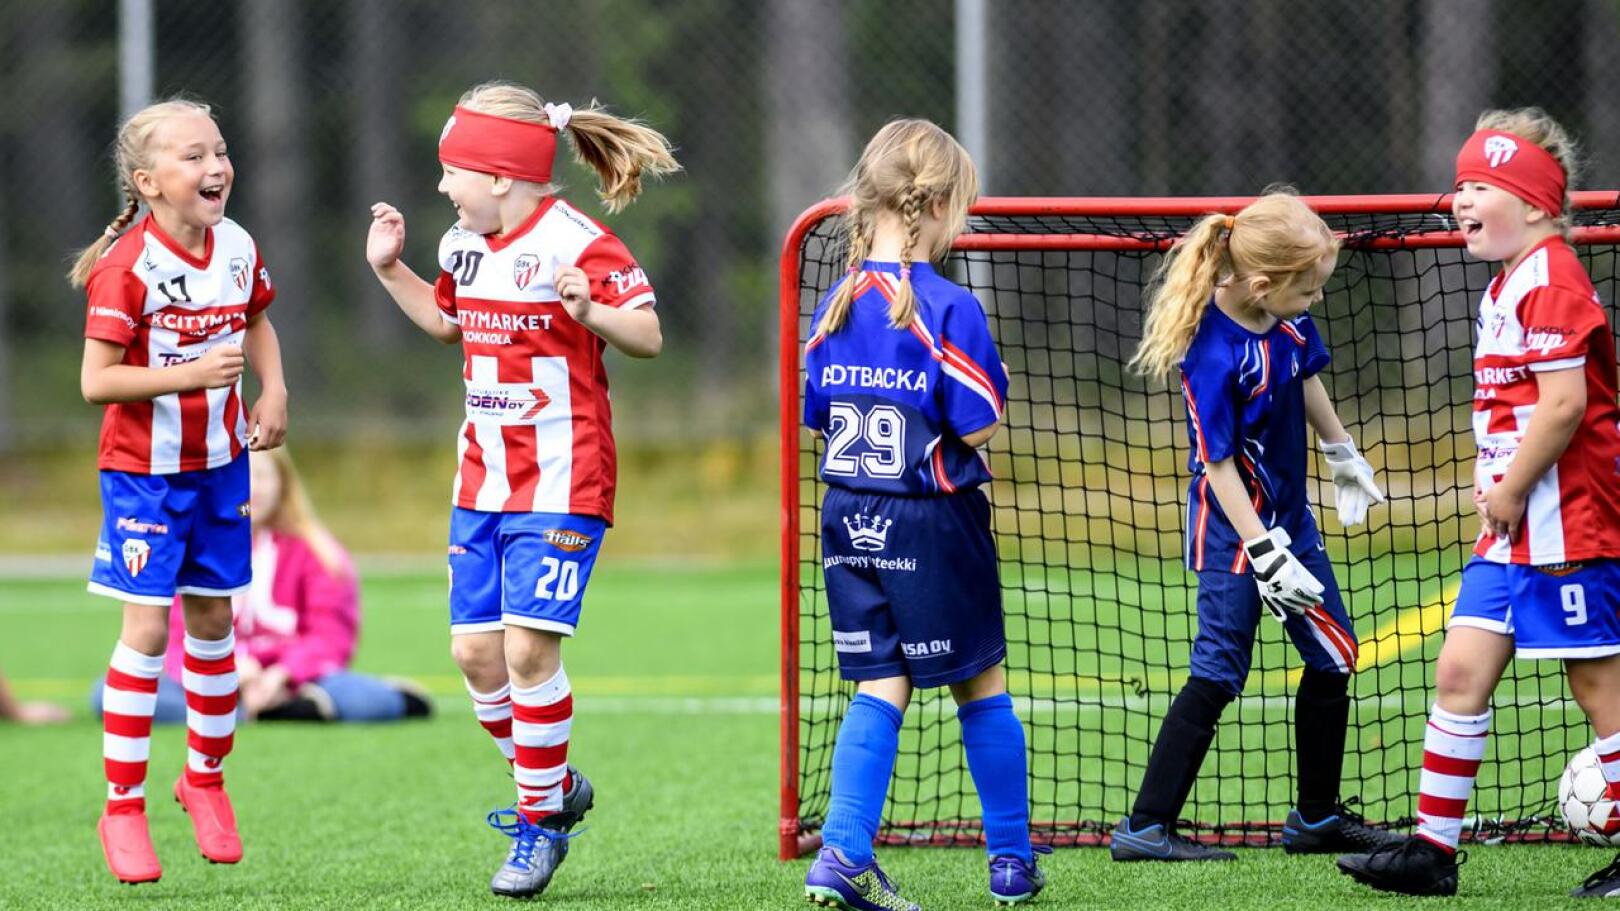 Kesällä Kokkola cupissakin (kuva) GBK:n kohdanneet Lohtajan Veikkojen tytöt pääsivät viikonloppuna pelaamaan Veikkojen järjestämässä syysturnauksessa.